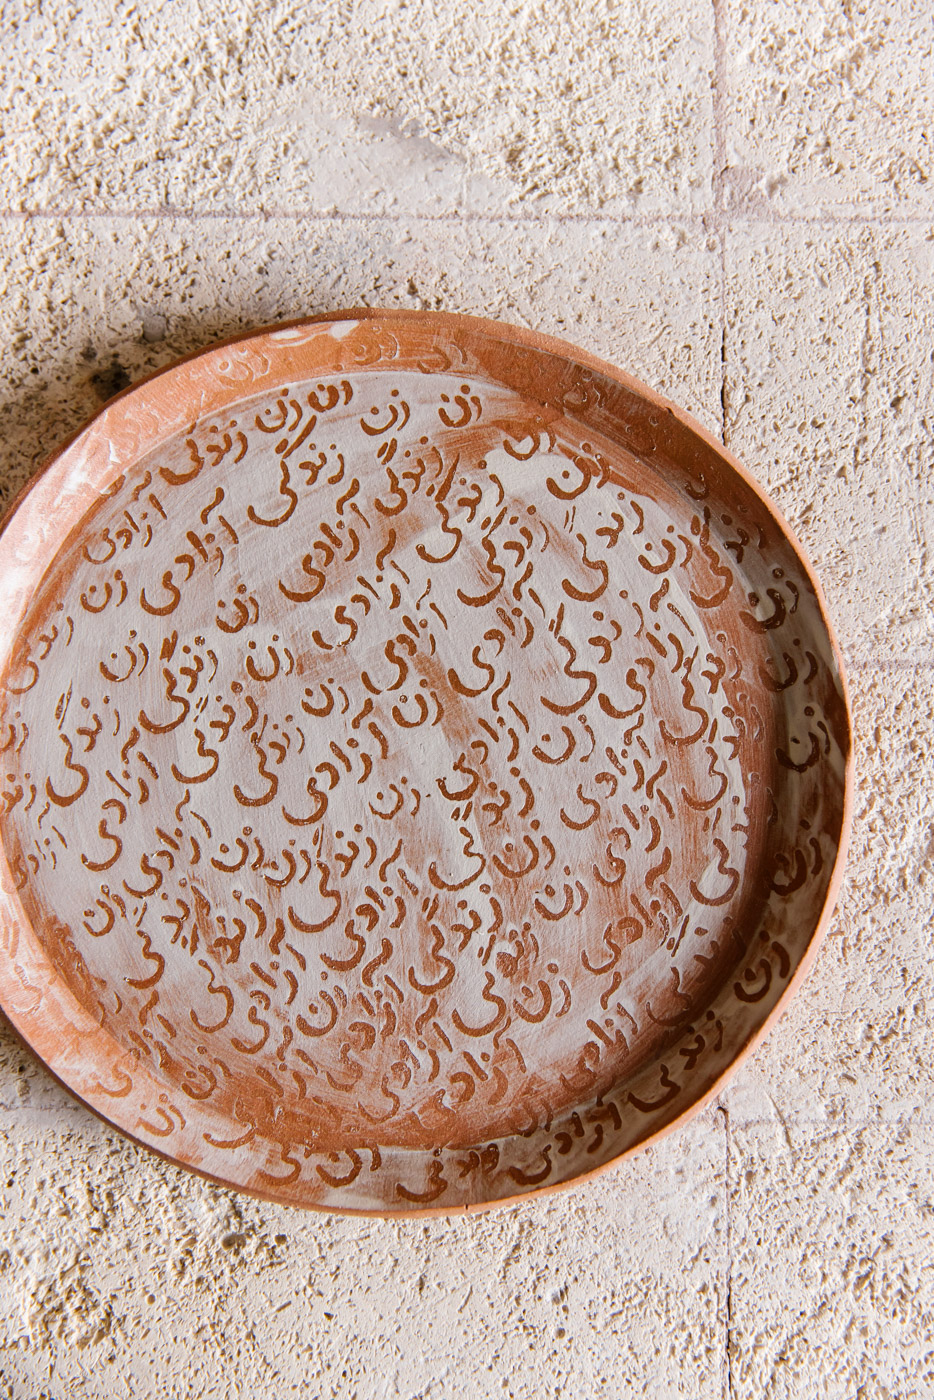 Iranian ceramic piece created by Clay by Soraya